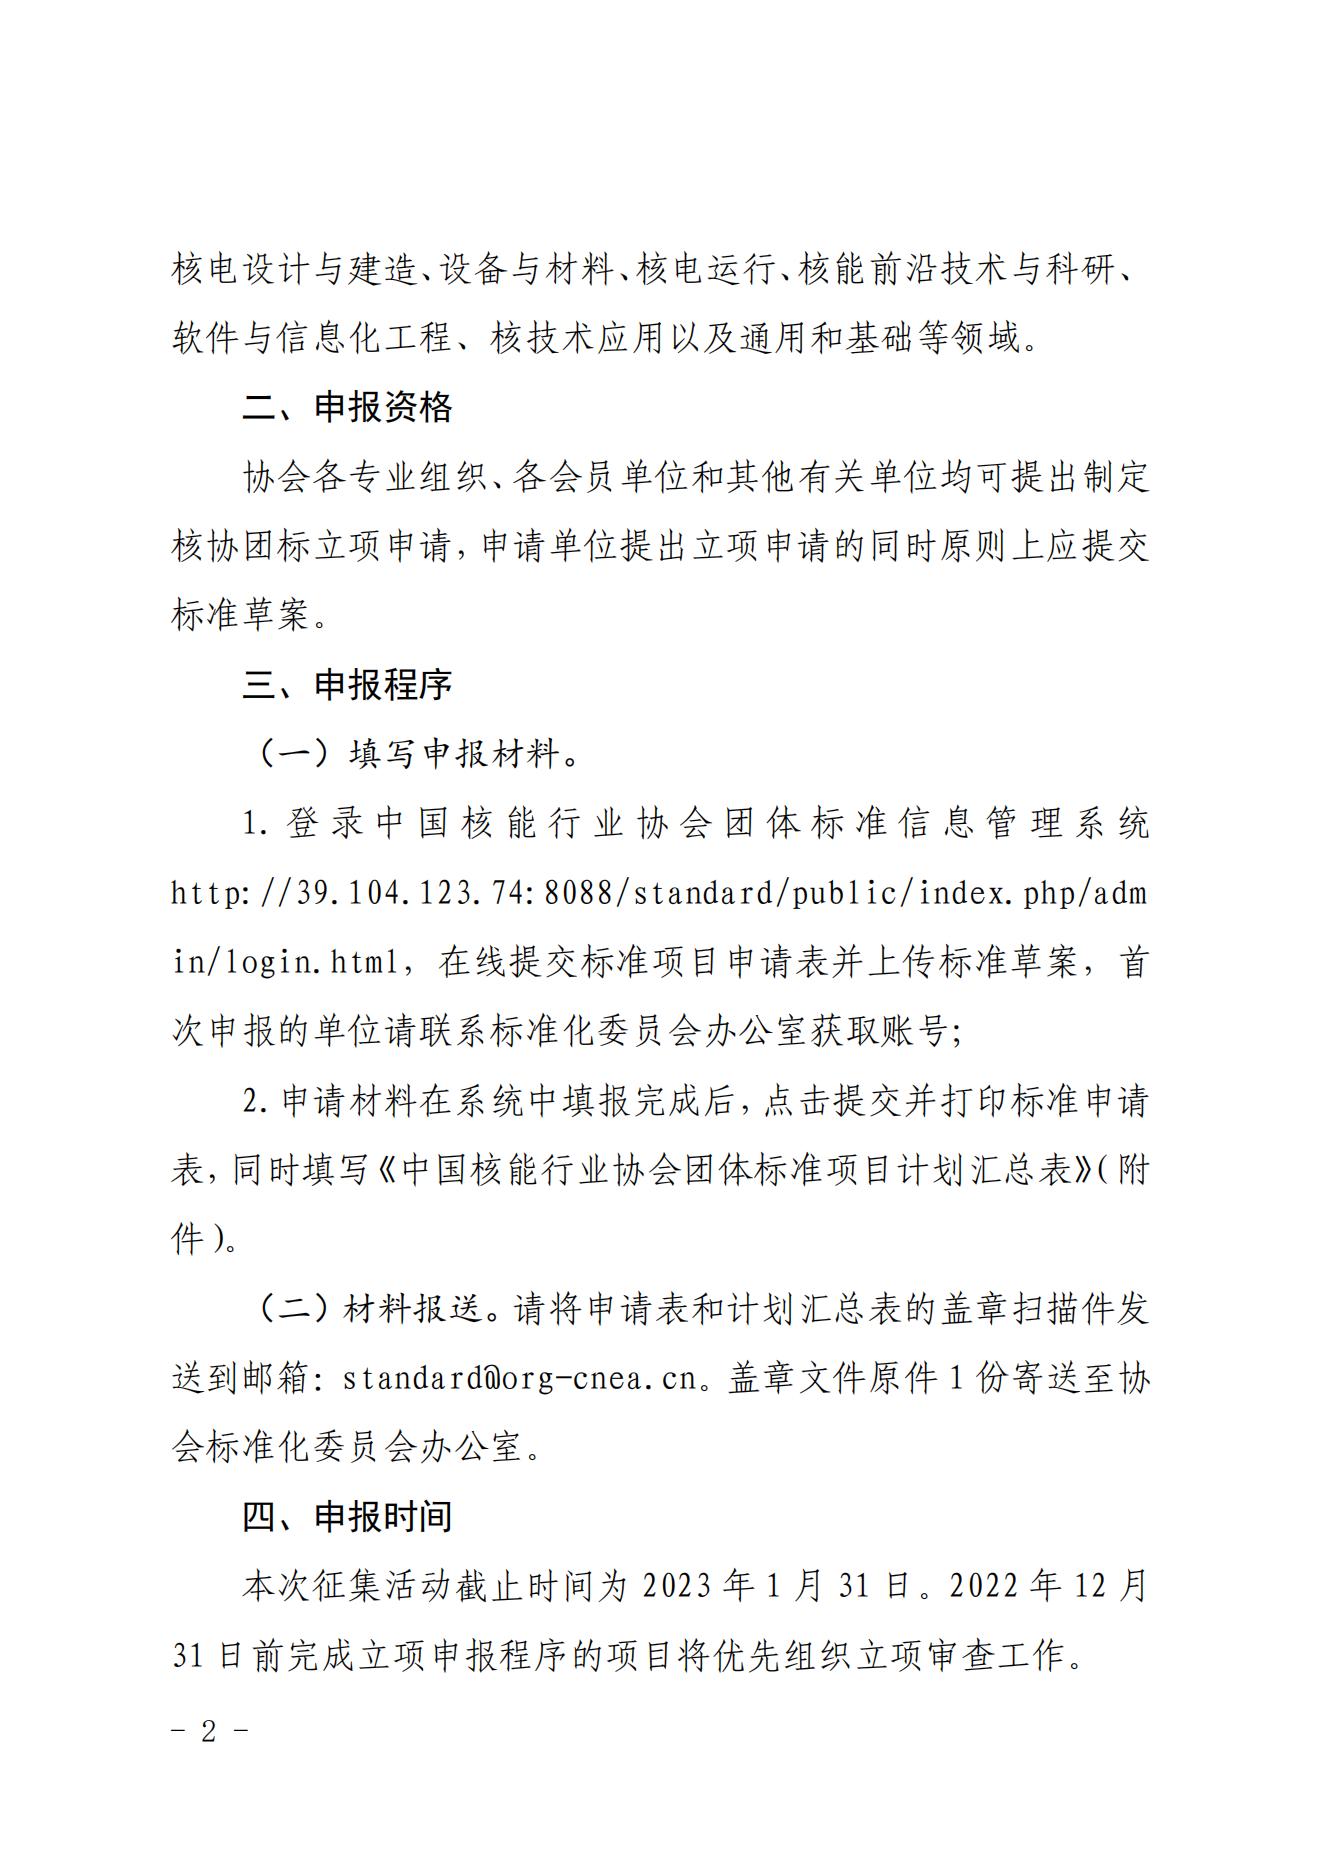 关于征集2023年度中国核能行业协会团体标准项目的通知_01.jpg